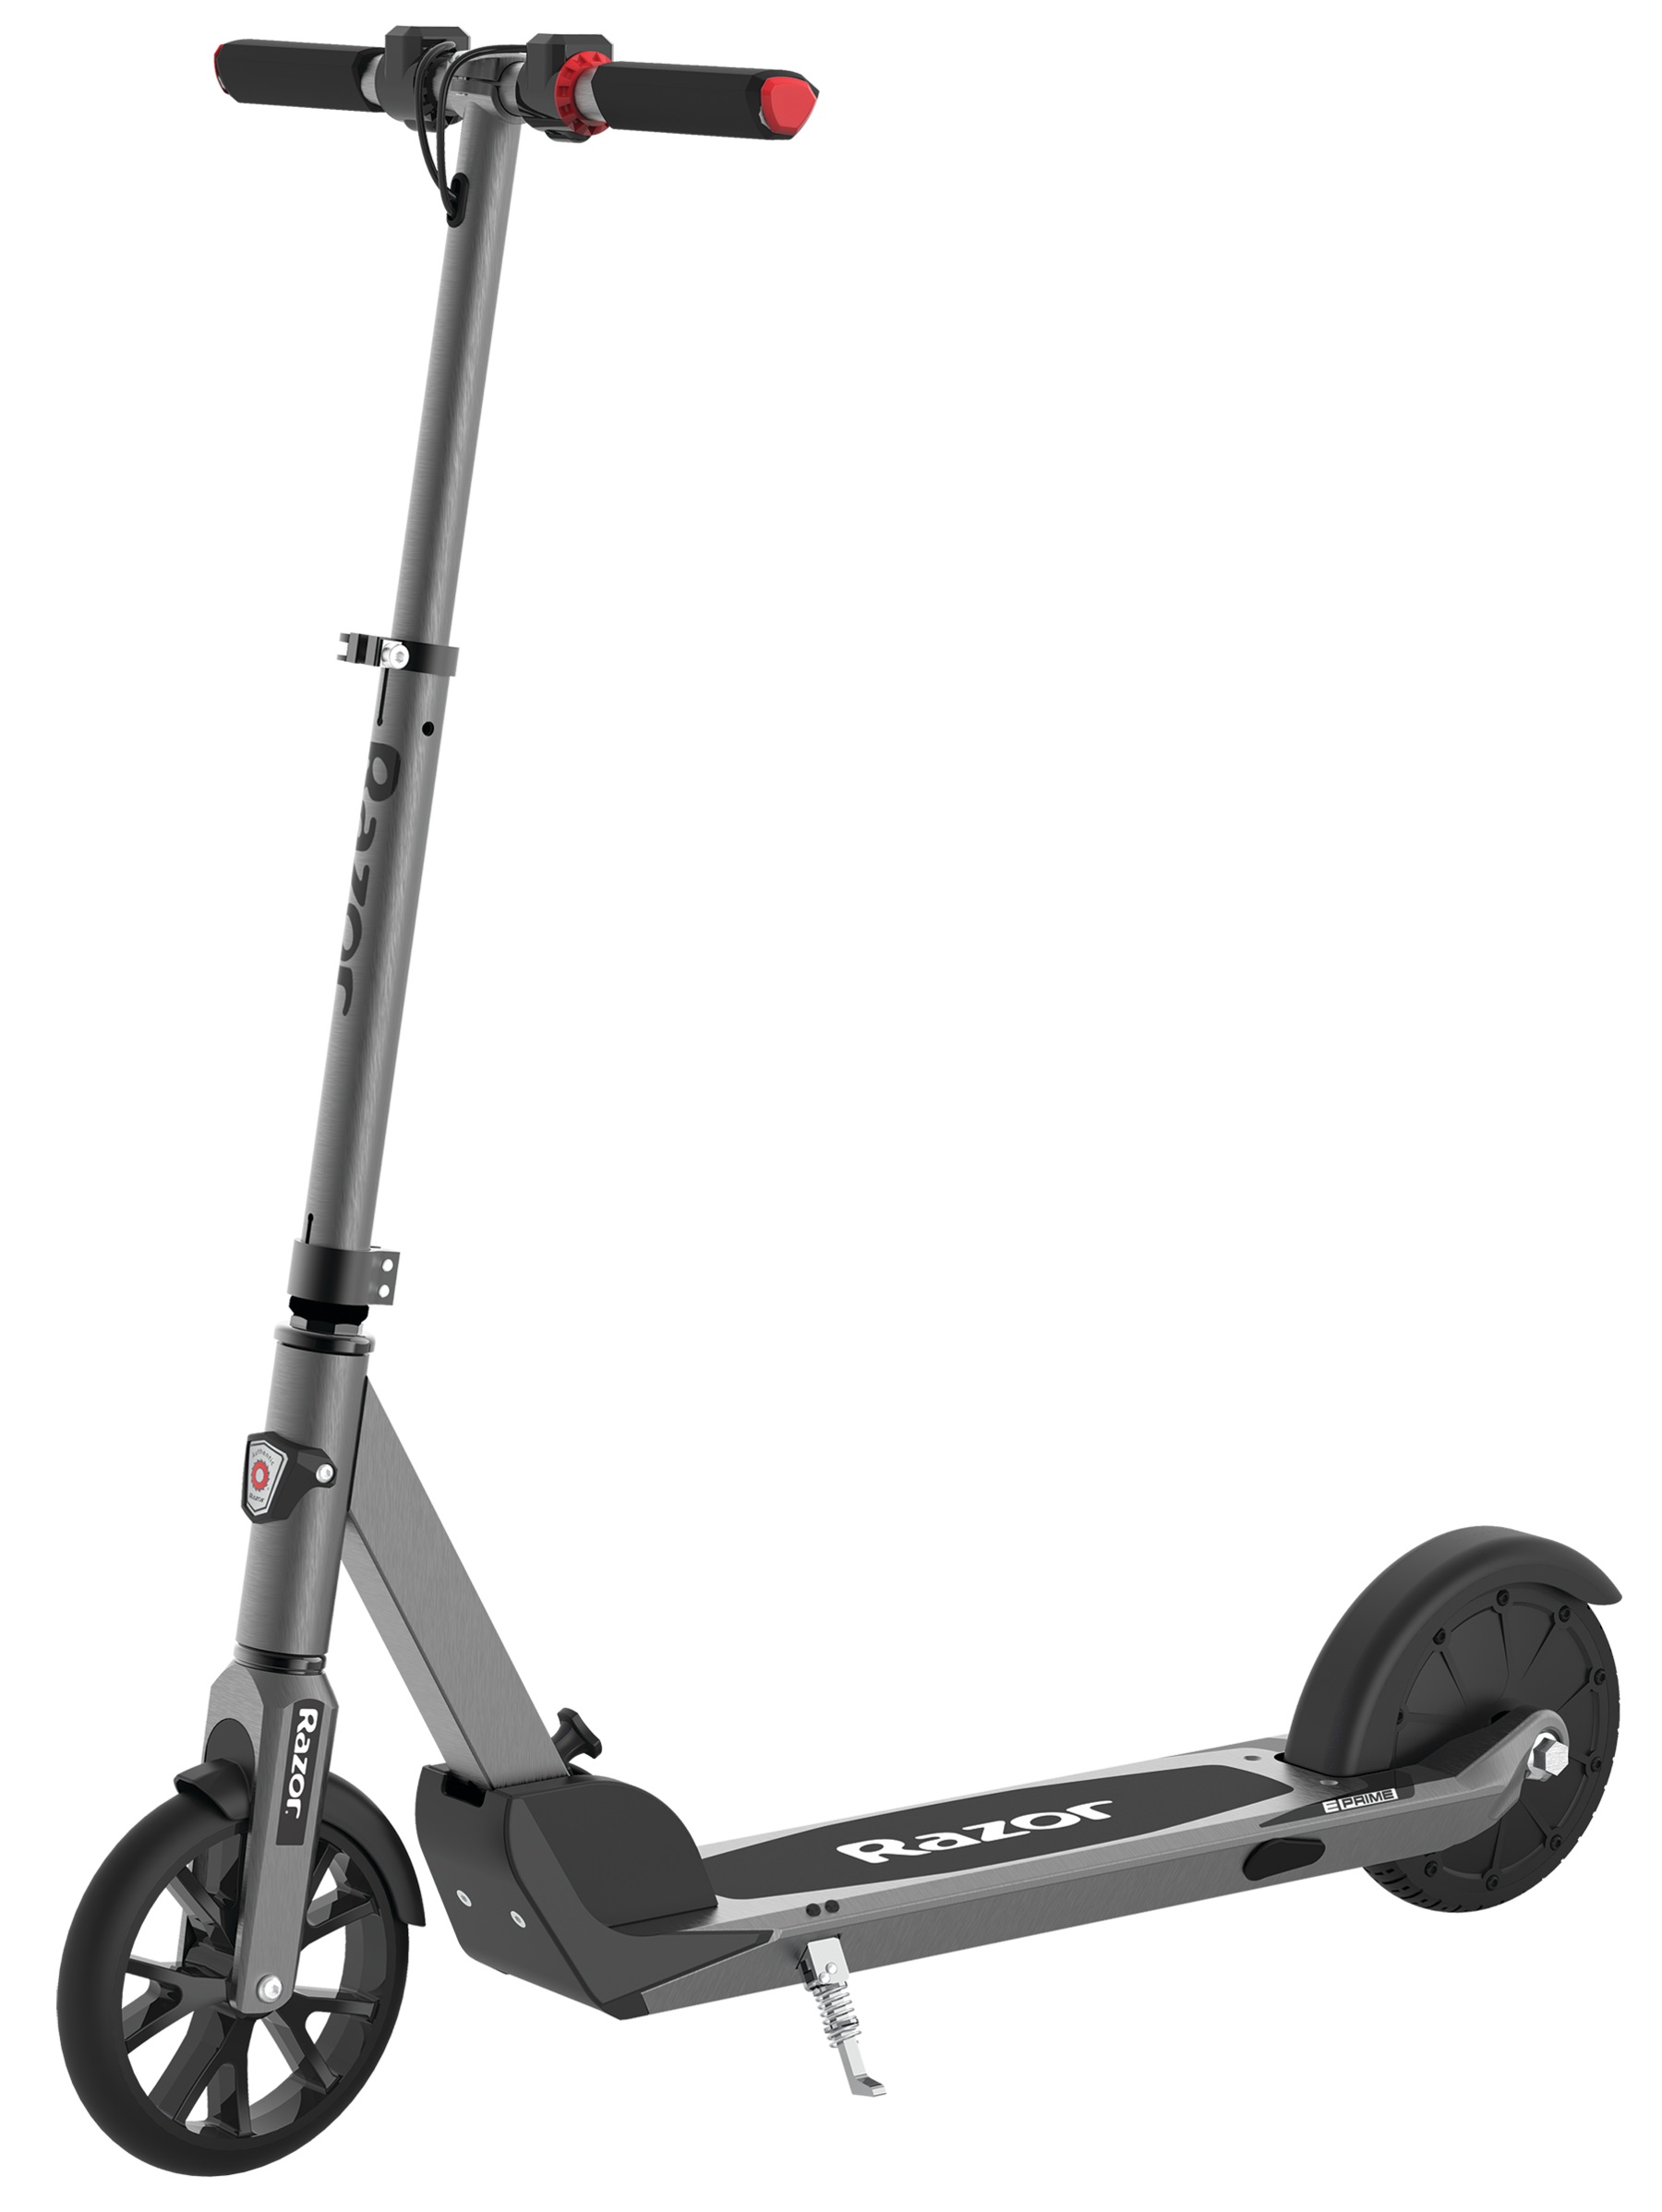 2 wheel scooter kmart